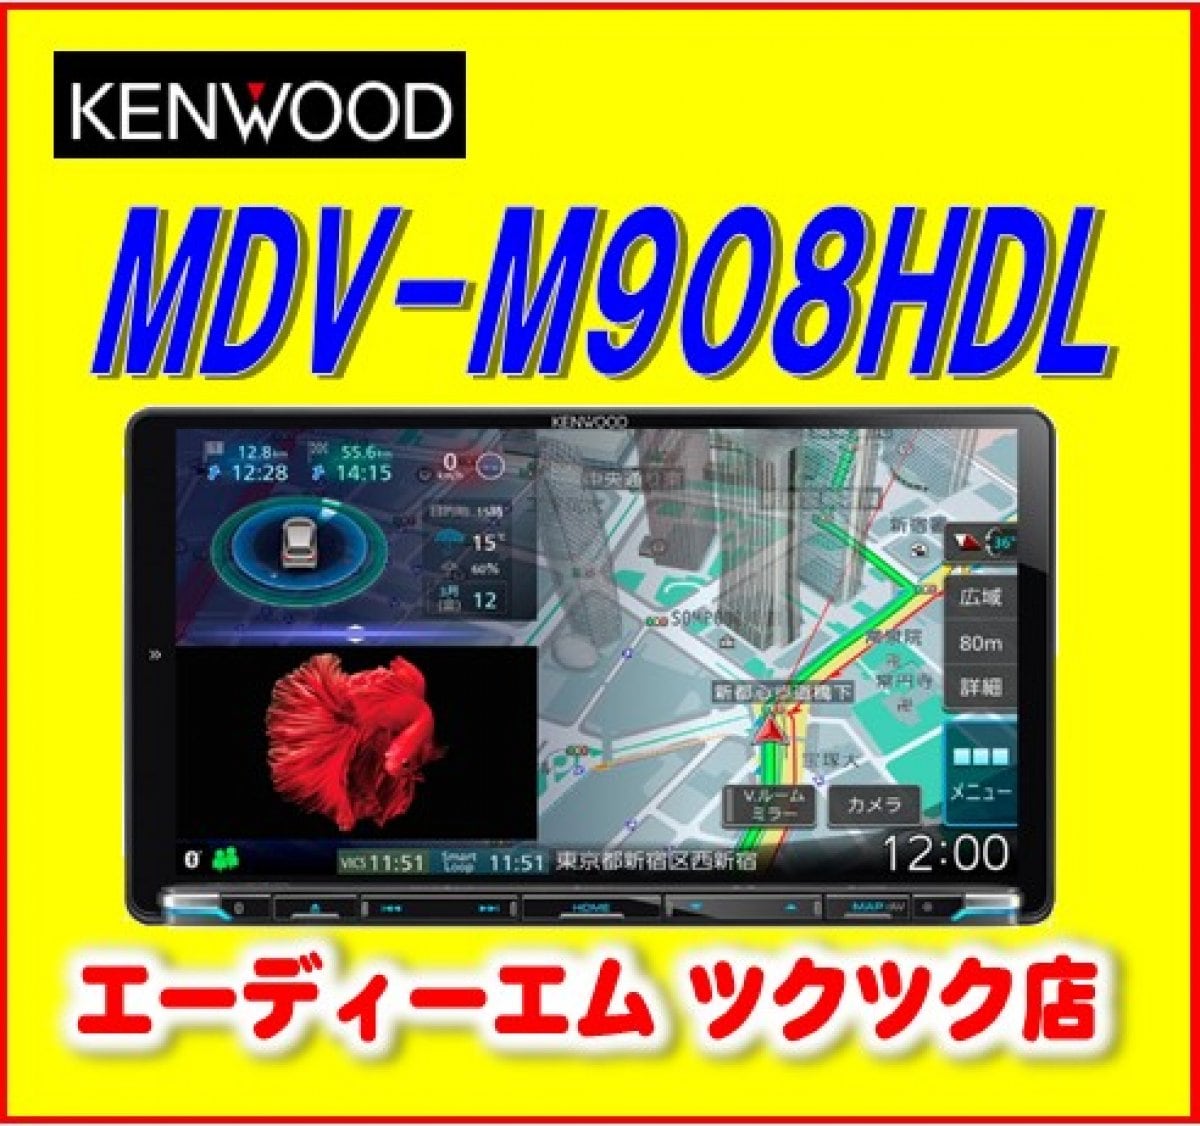 ケンウッド カーナビ 彩速ナビ大画面9Ⅴ型モデル MDV-M908HDLハイレゾサウンド 地デジタルTV/ Bluetooth内蔵 DVD/USB/SD AVナビ